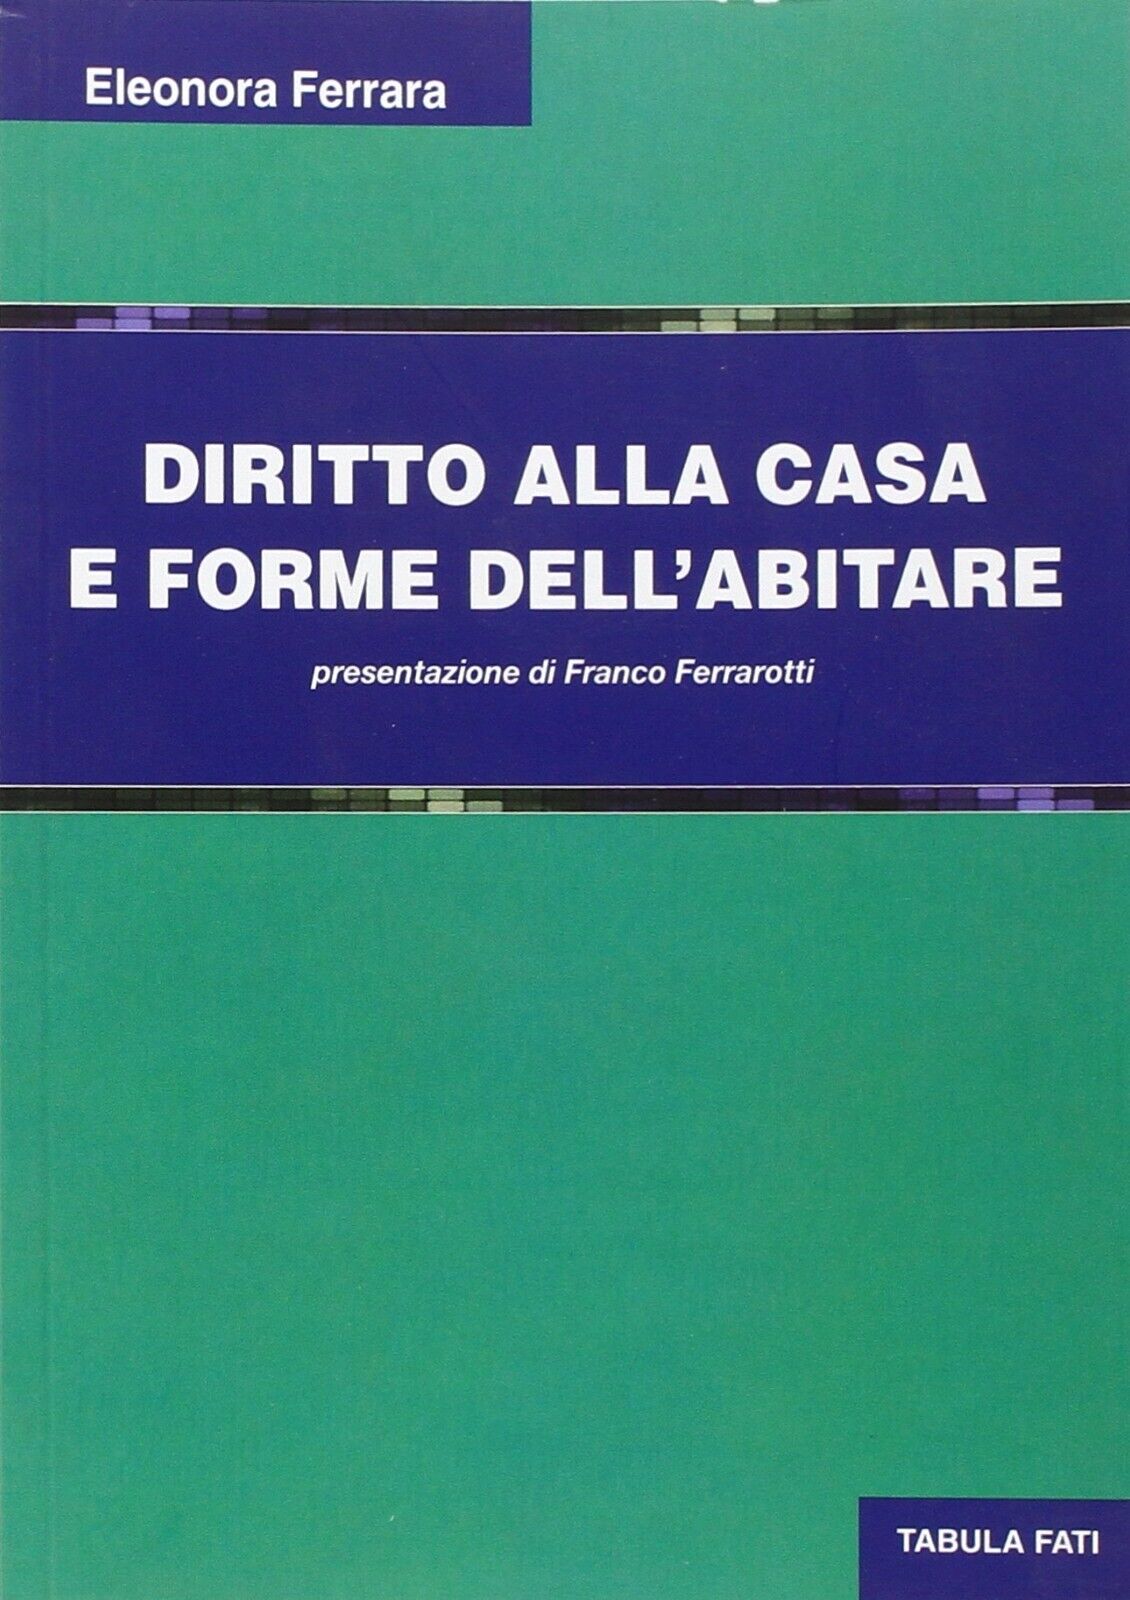 Diritto alla casa e forme delL'abitare di Eleonora Ferrara, 2014, Tabula Fati